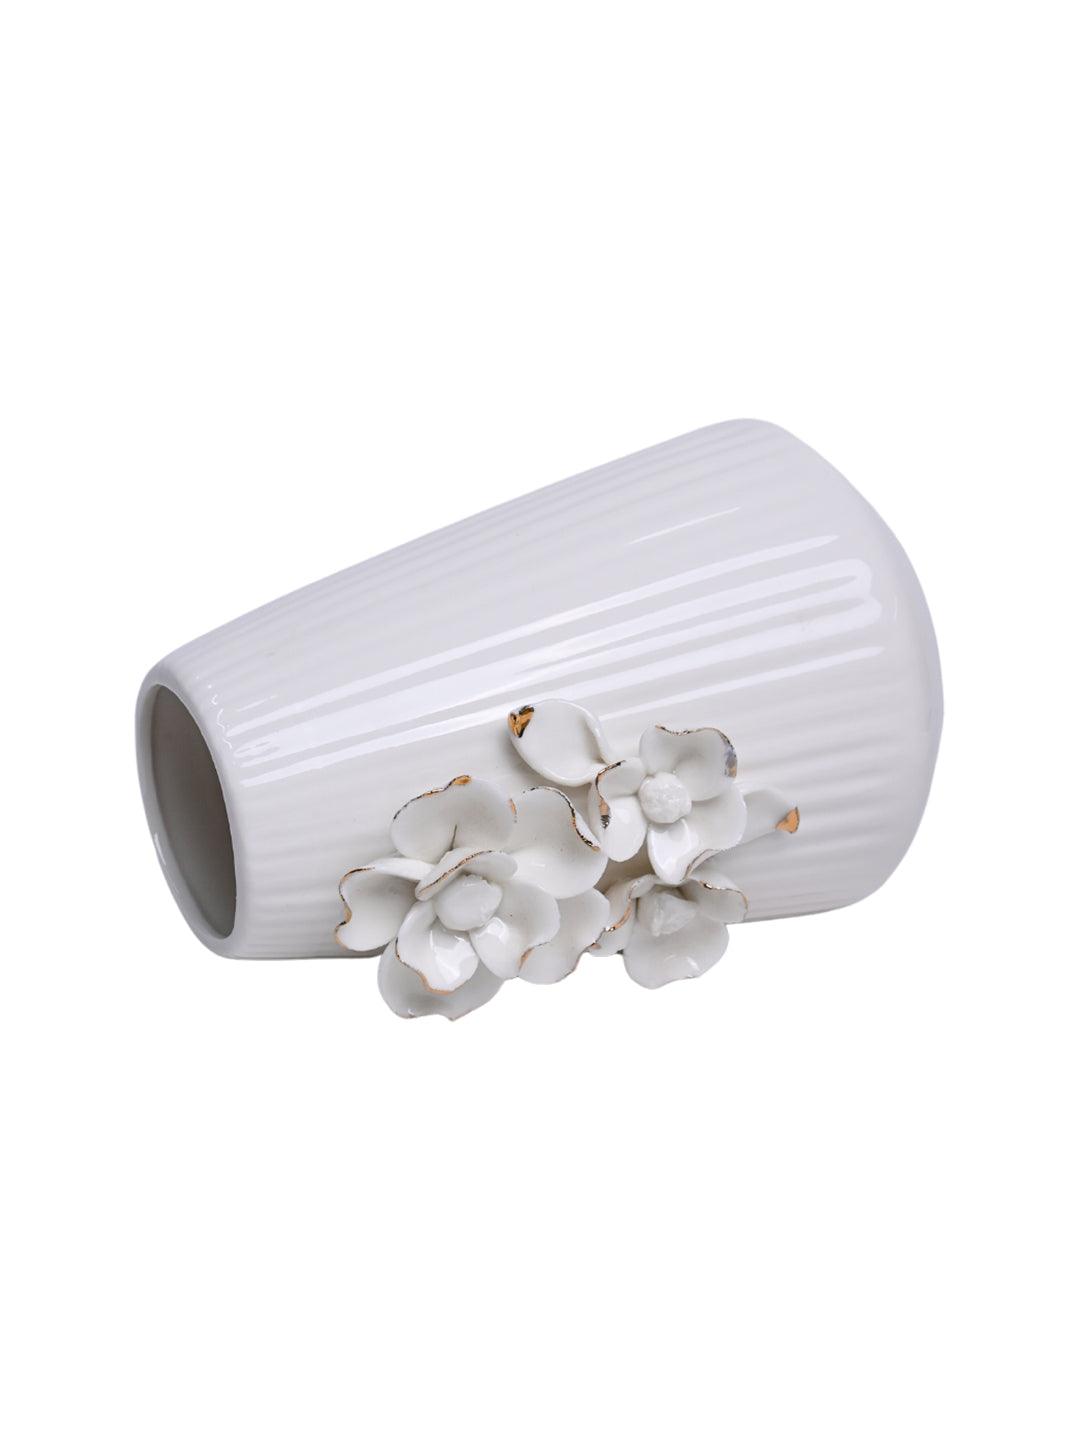 Ceramic White Vase for Home Decoration - MARKET 99